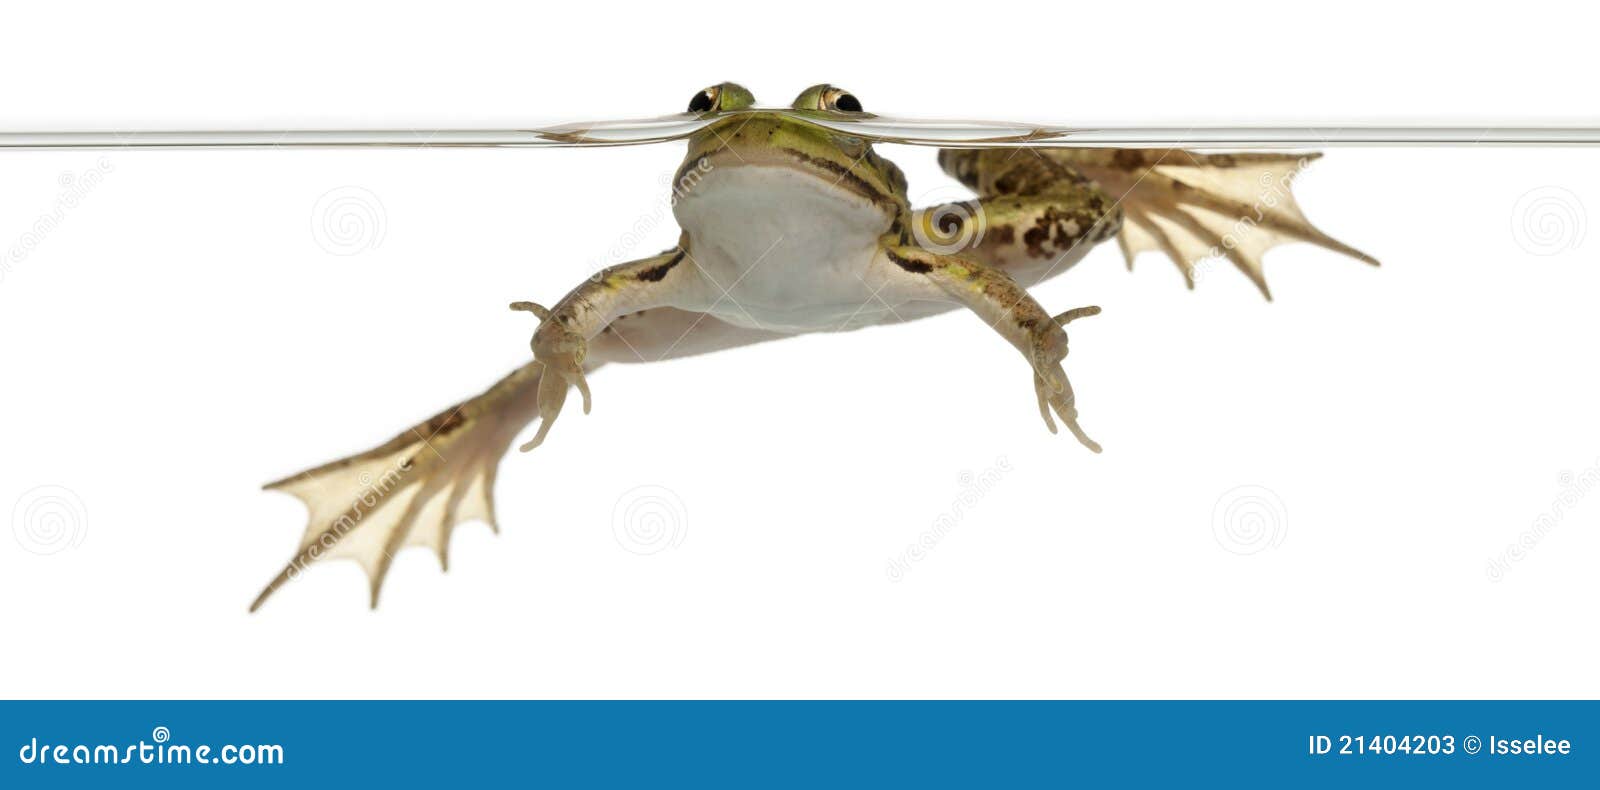 edible frog, rana esculenta, in water